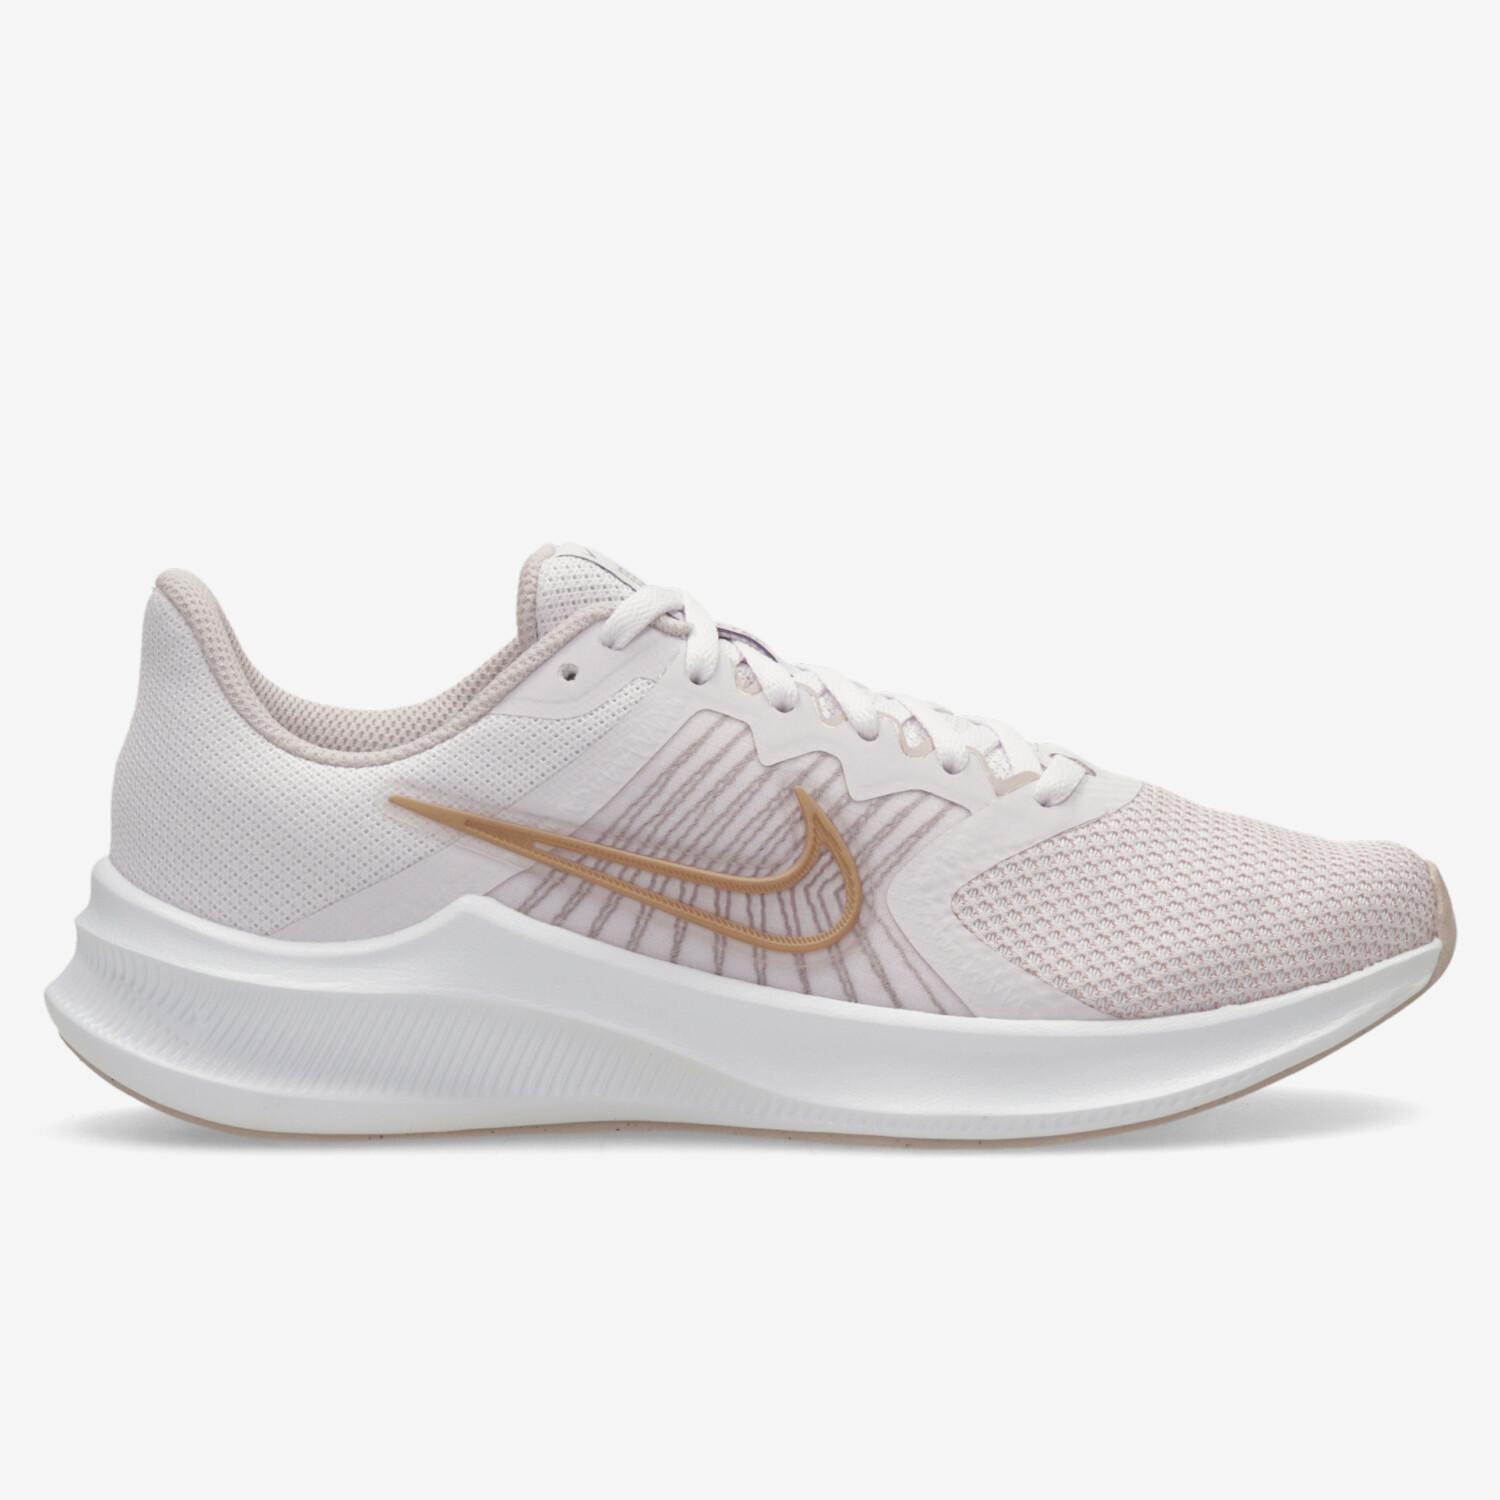 Nike Downshifter 11 -Blancas - Zapatillas Running Mujer